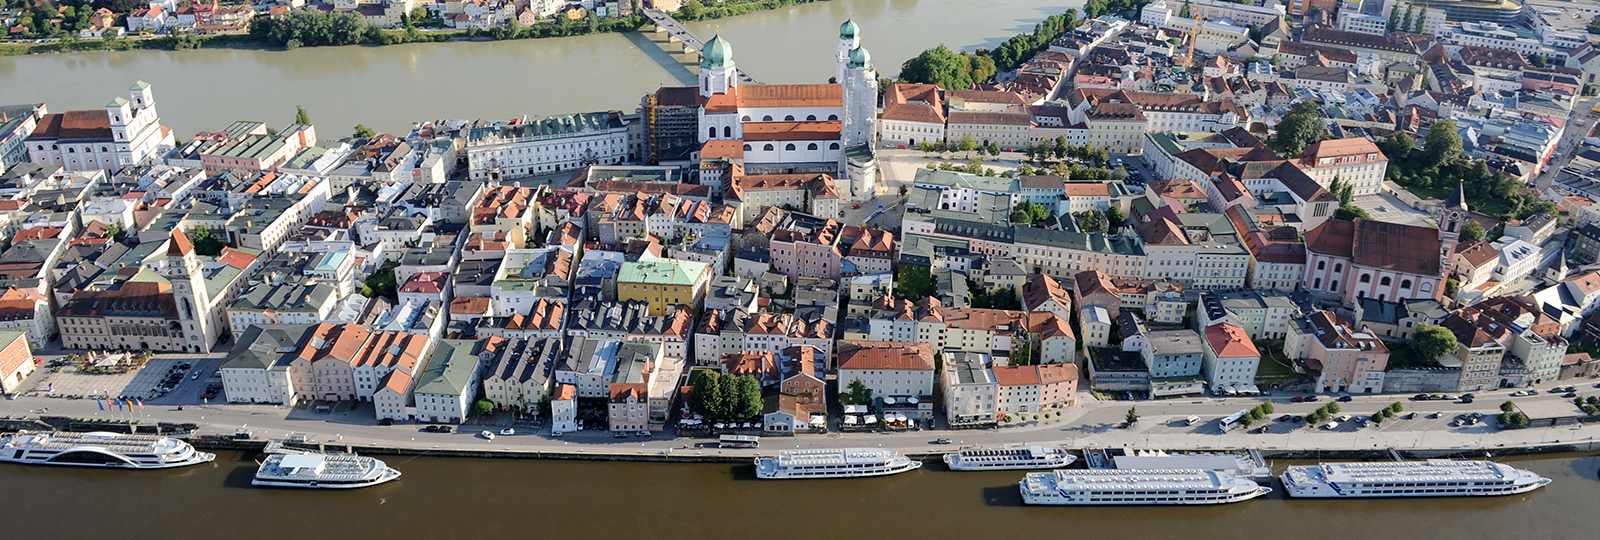 2018 in Passau